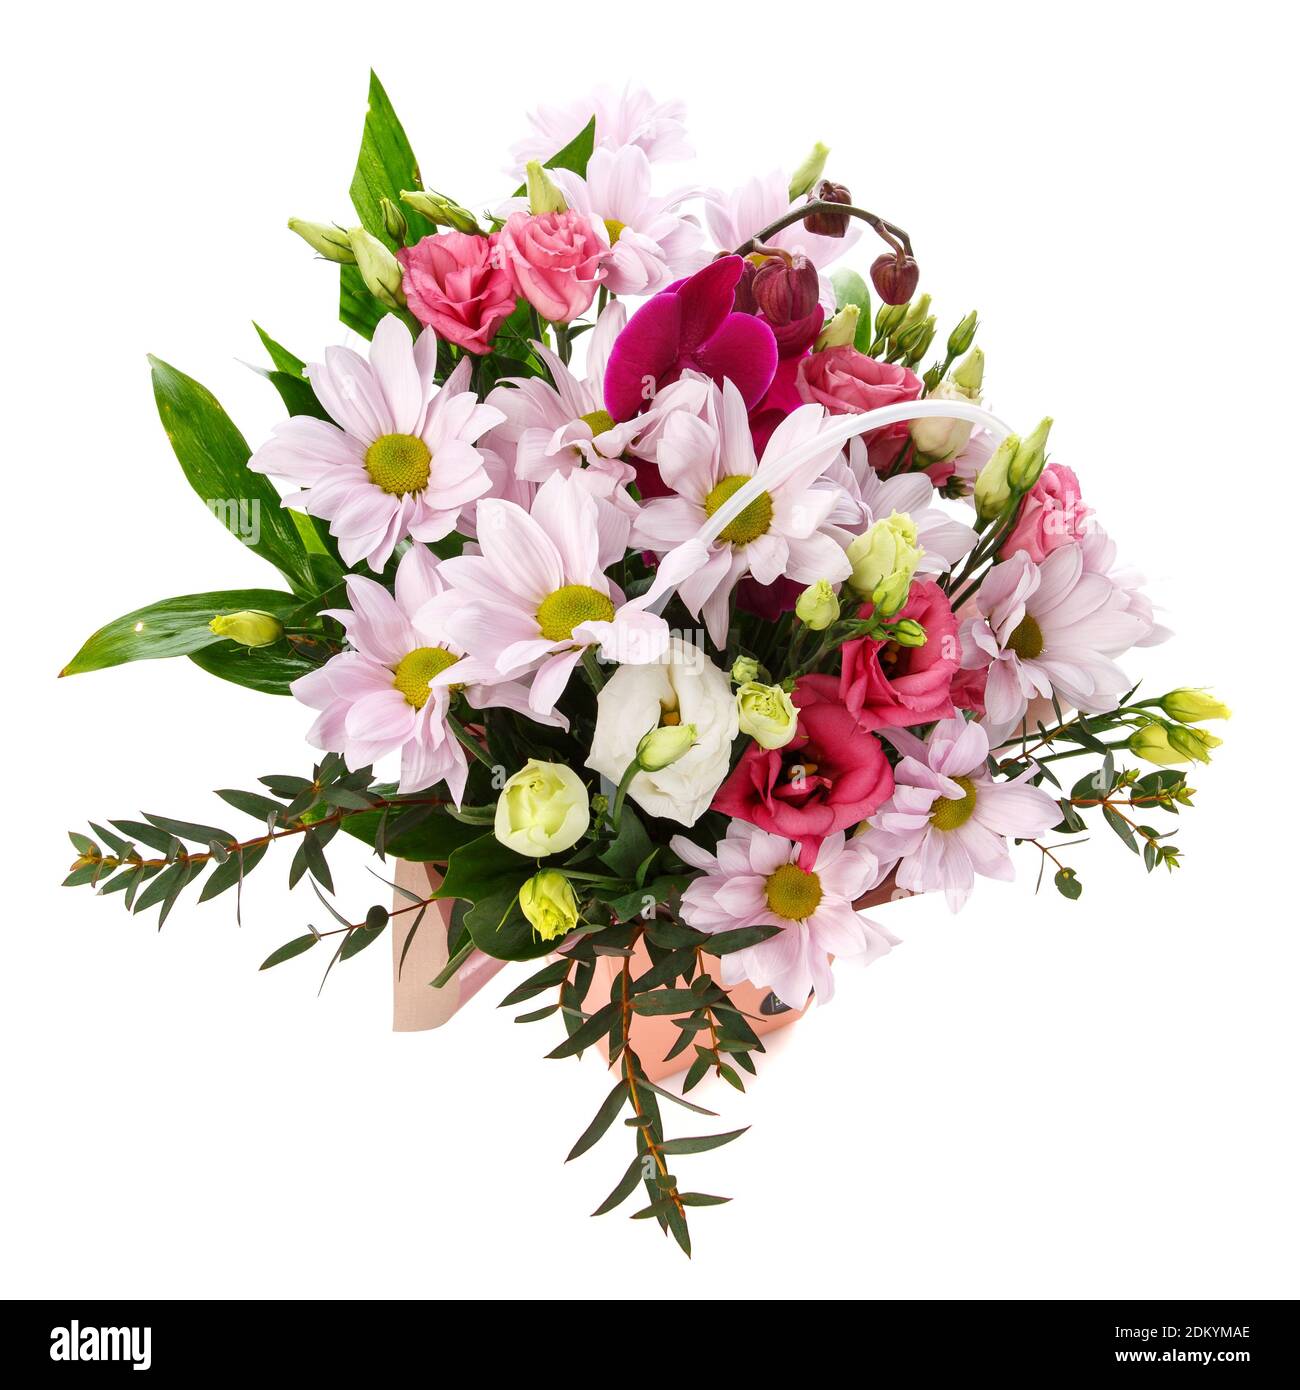 Delicato bouquet di colori pastello con fiori diversi su sfondo bianco. Foto Stock